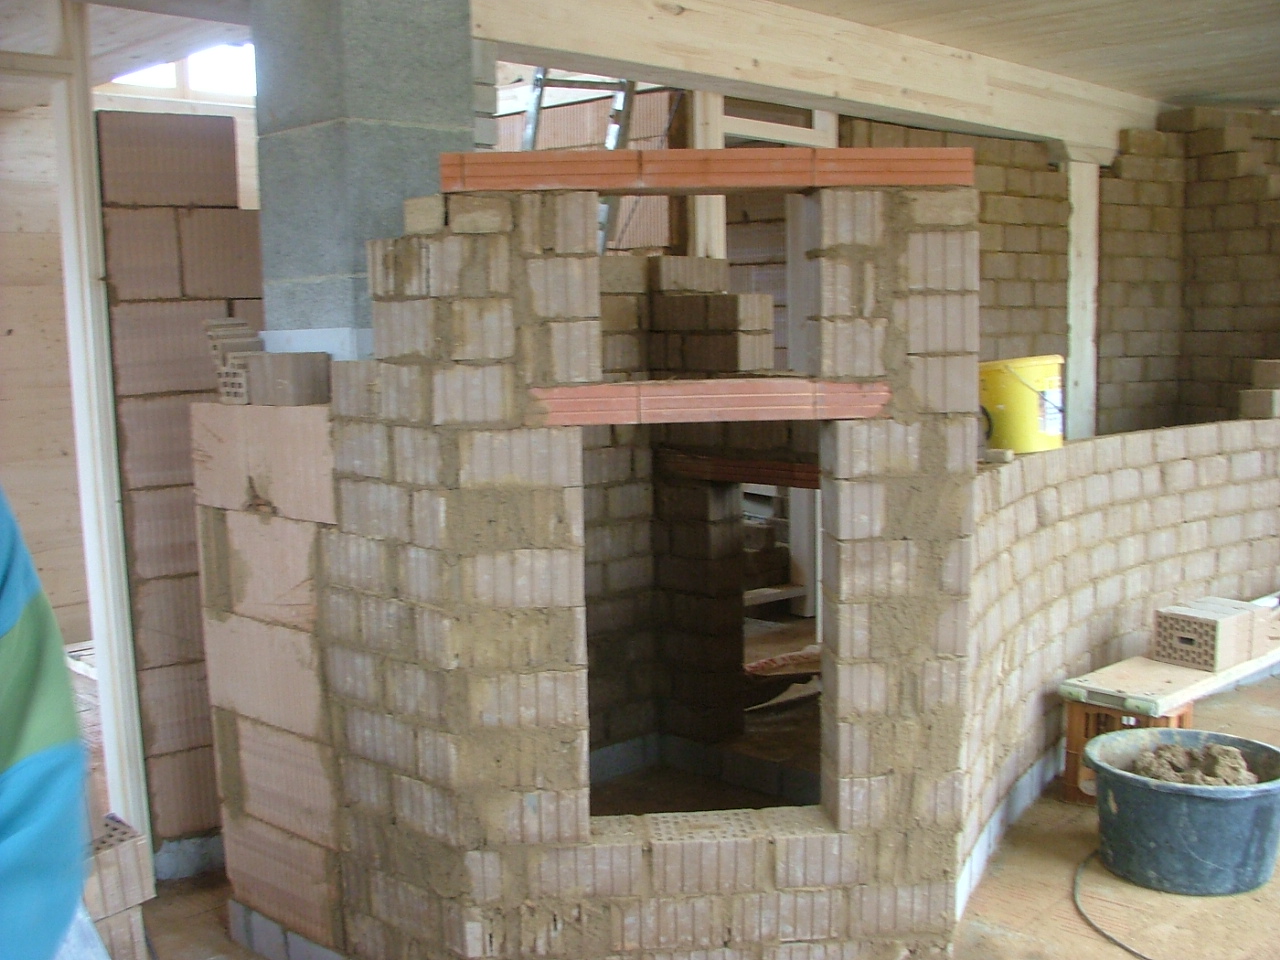 Ausbau Holzhaus mit Lehmsteinen: Bau eines Thermalraumes